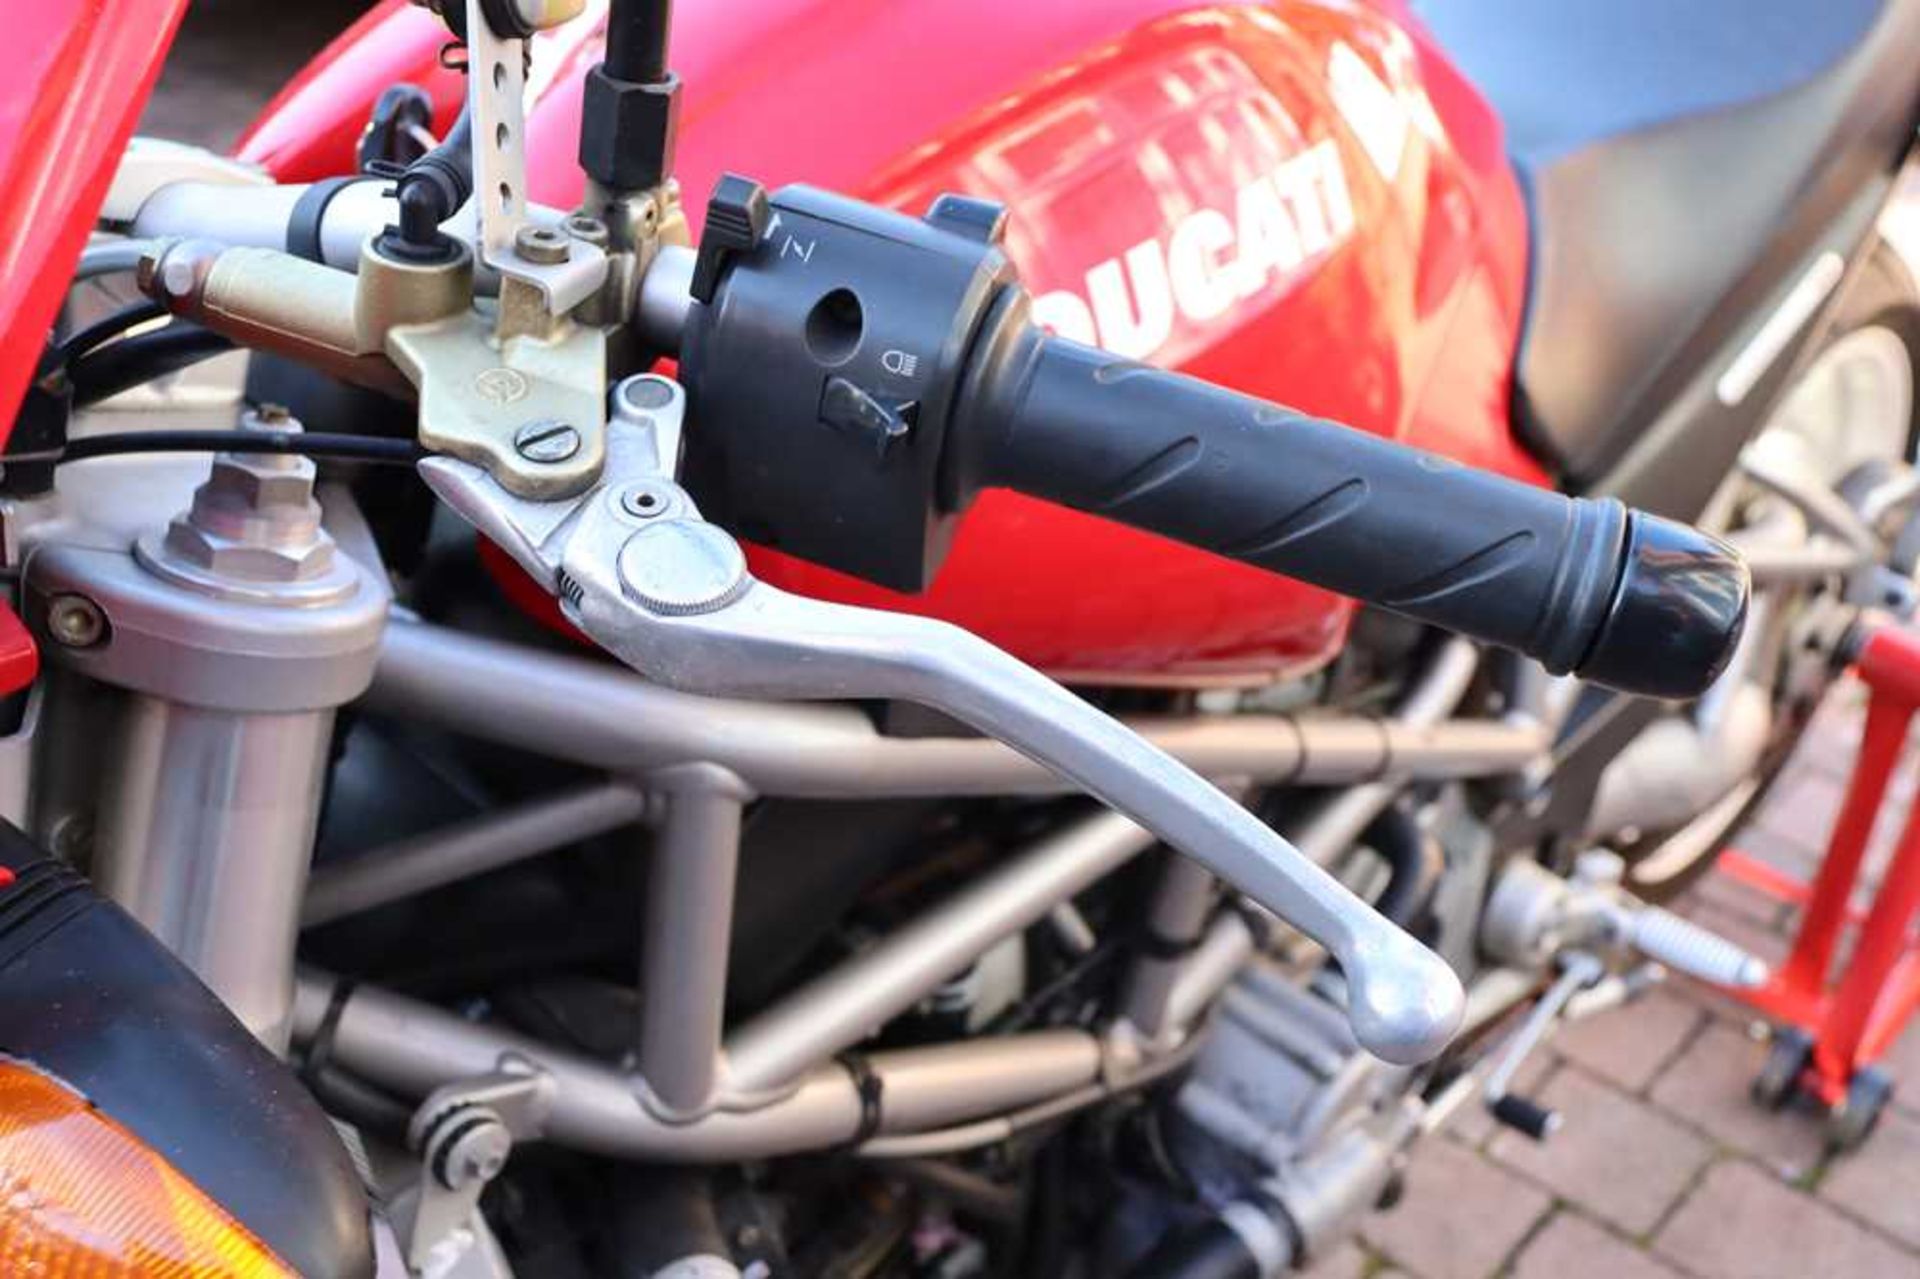 2003 Ducati Monster S4R 996 Desmoquattro Superbike engine - Image 20 of 54